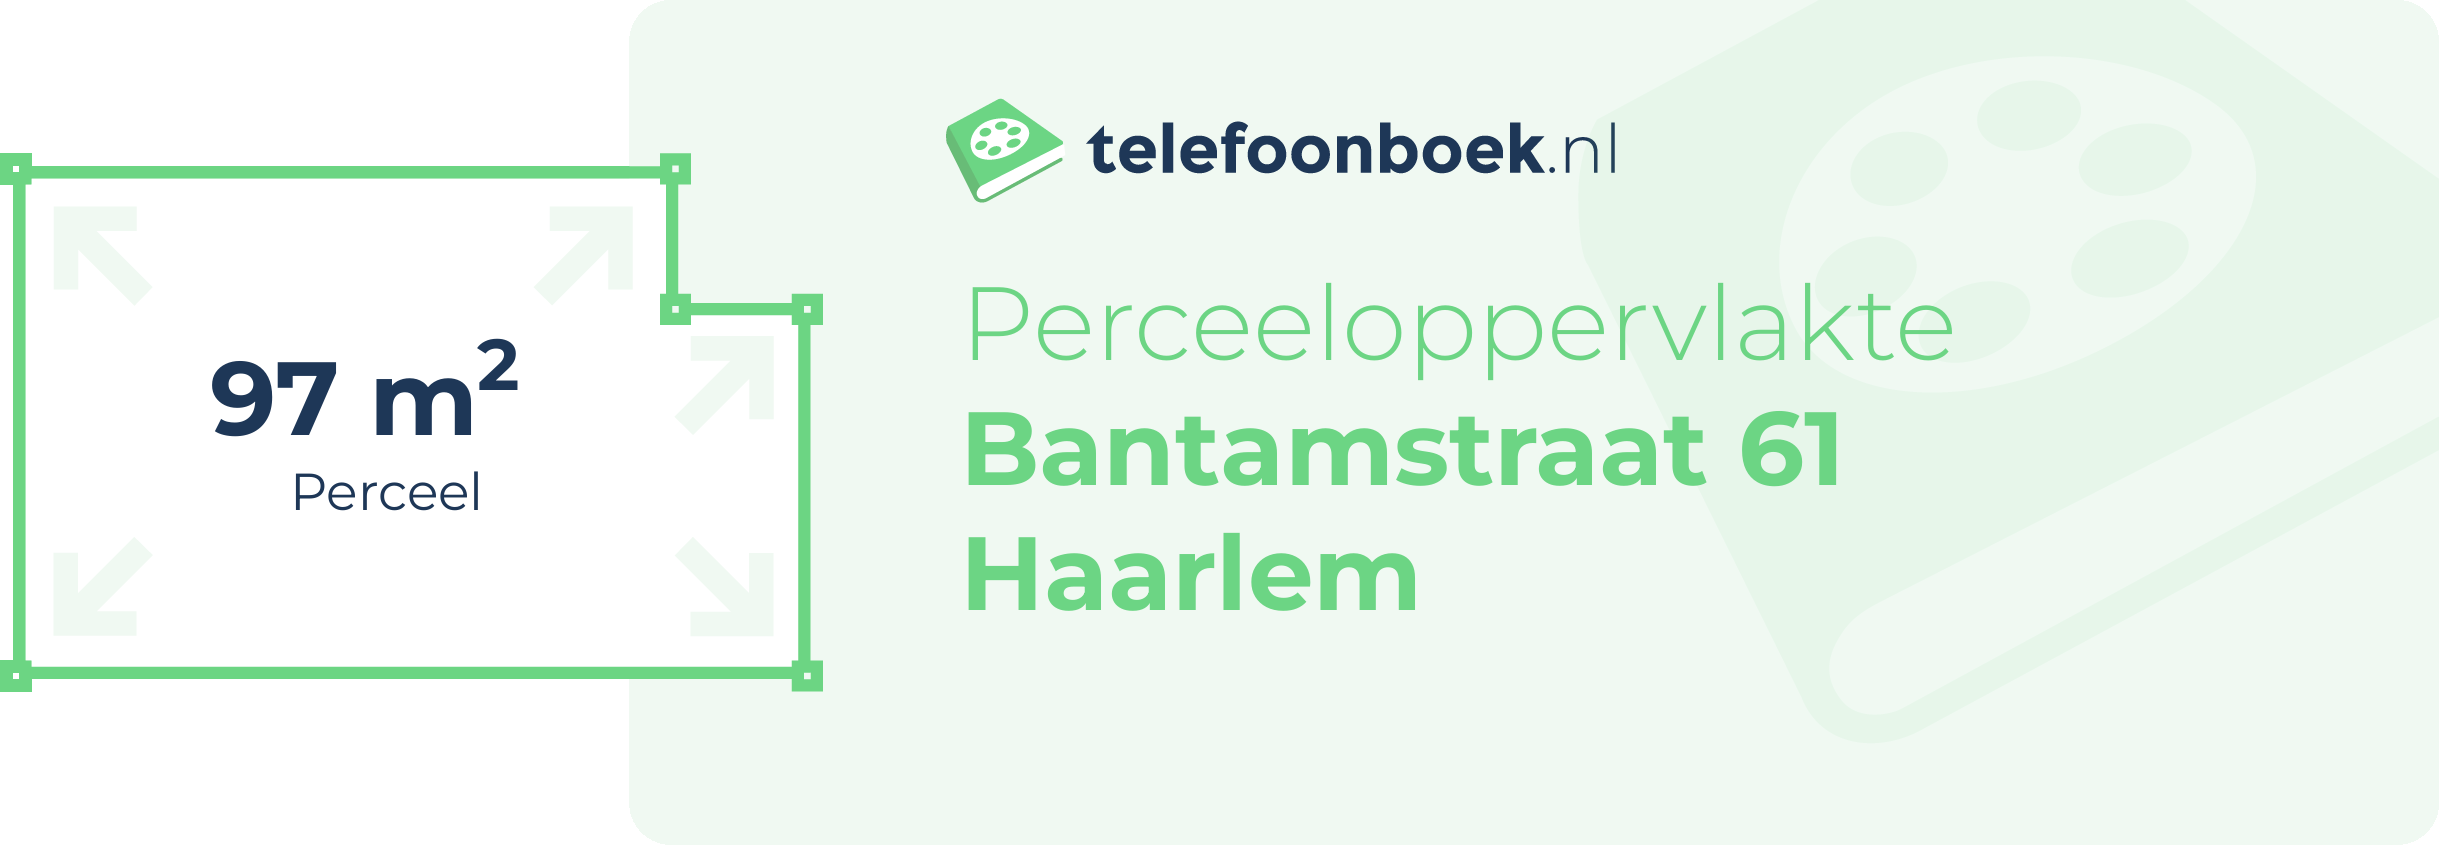 Perceeloppervlakte Bantamstraat 61 Haarlem